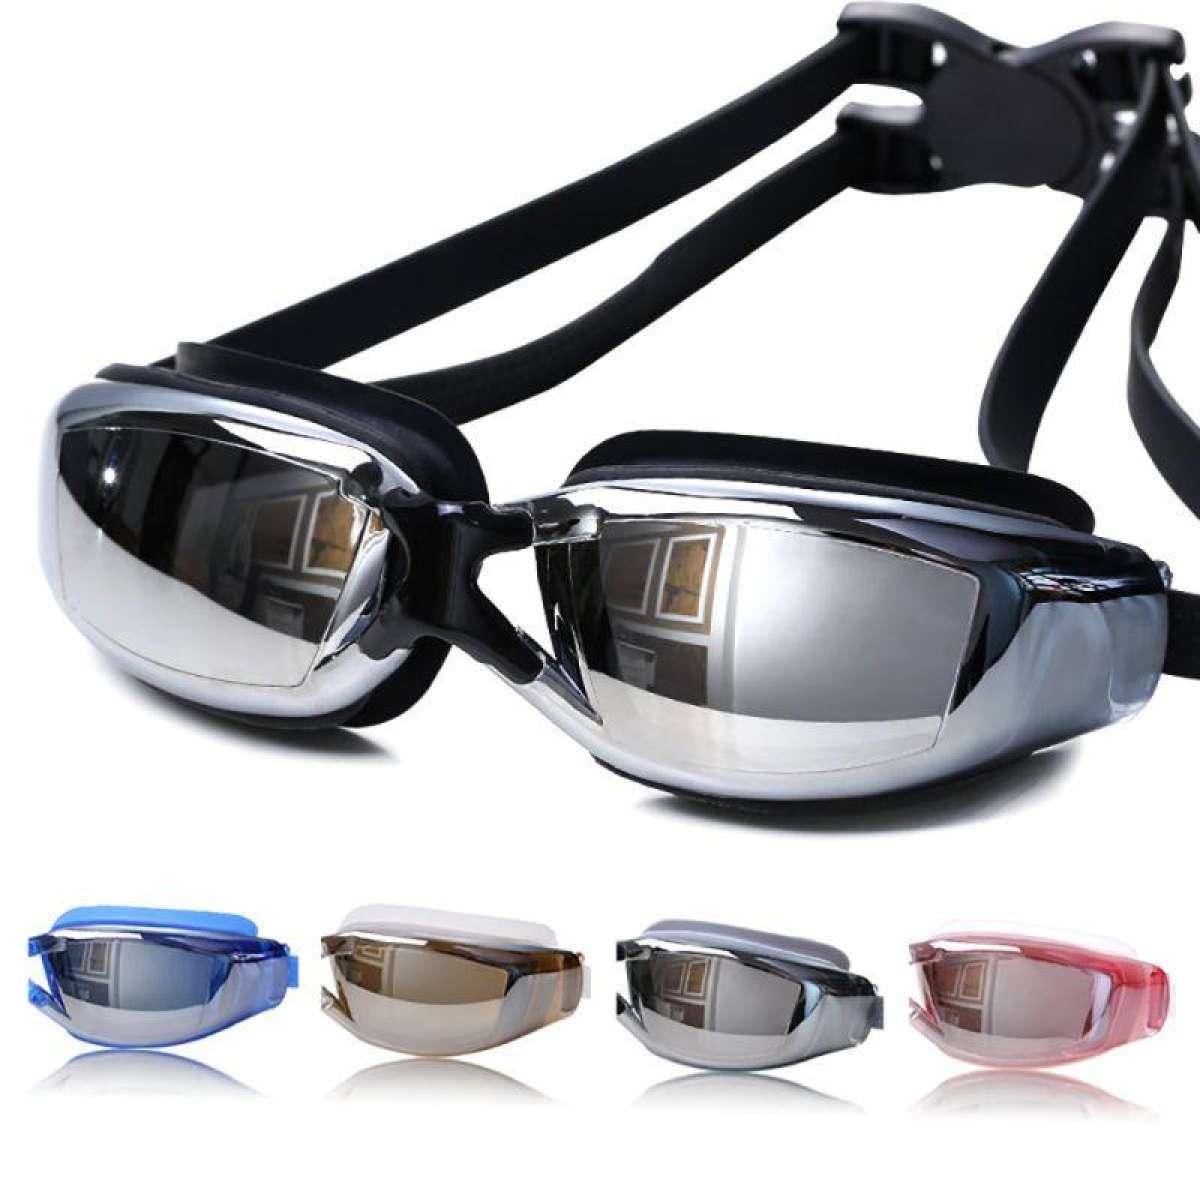 แว่นตาว่ายน้ำ แว่นตาสำหรับว่ายน้ำ ถนอมสายตา ป้องกันแสงแดด UV Swimming glasses / Goggle สีดำ เงิน ชมพู น้ำเงิน ฟ้าน้ำทะเล